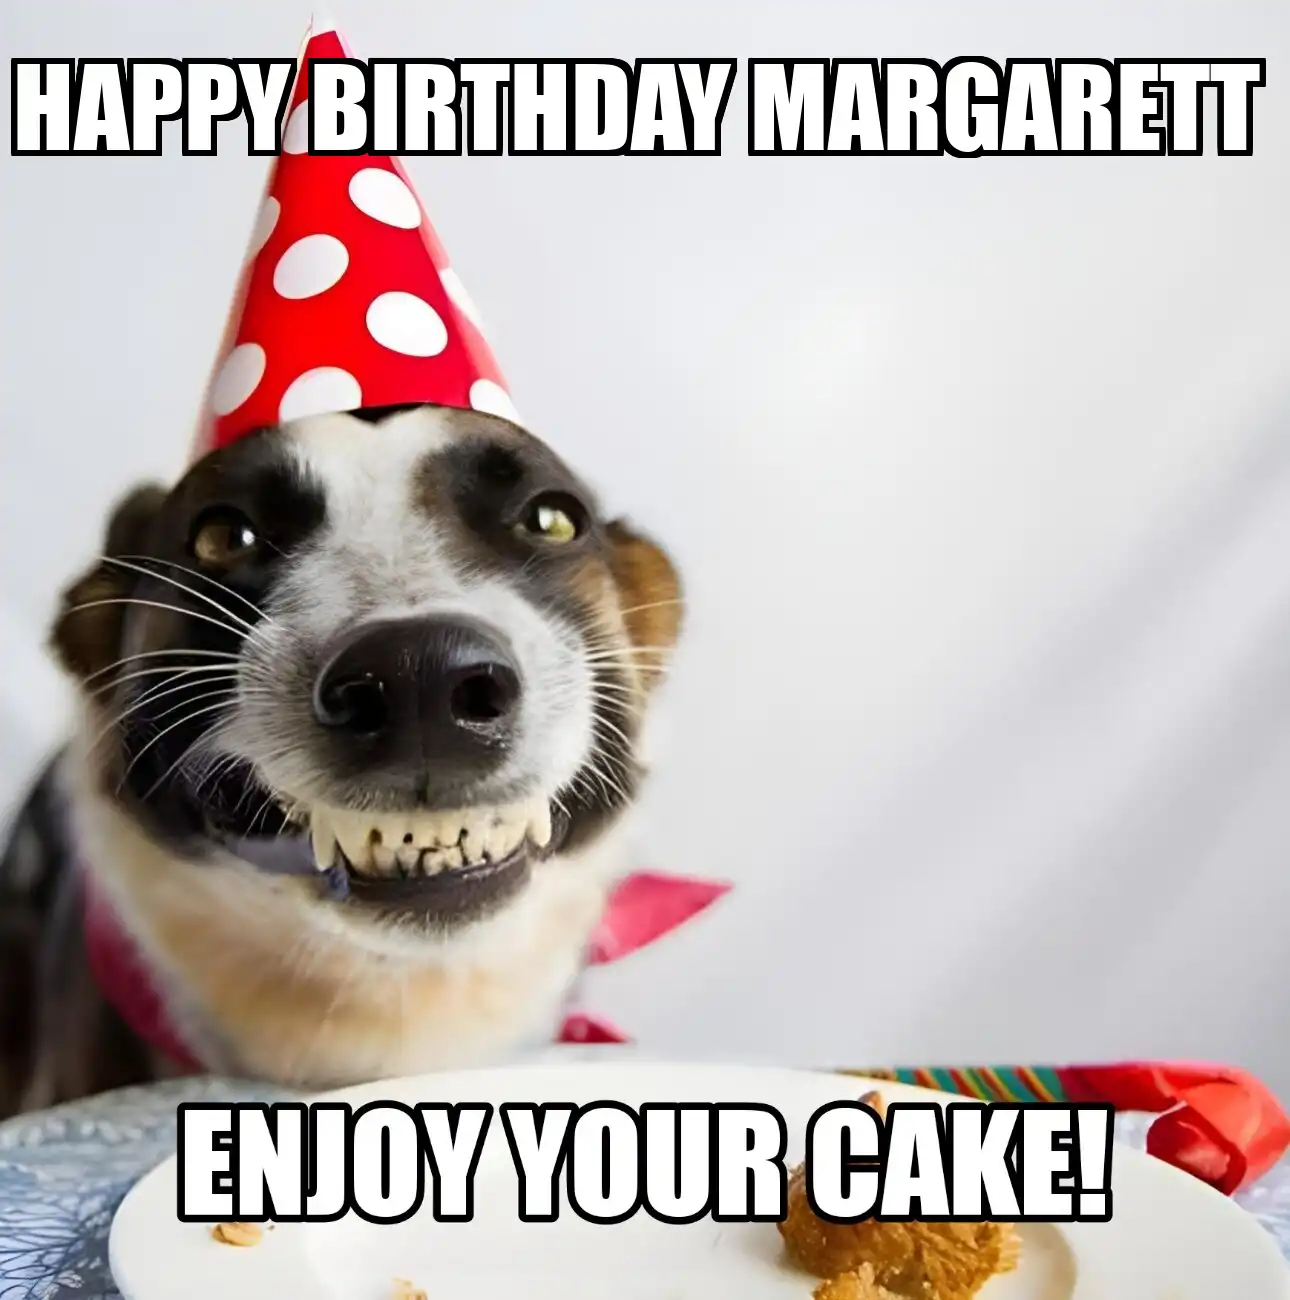 Happy Birthday Margarett Enjoy Your Cake Dog Meme